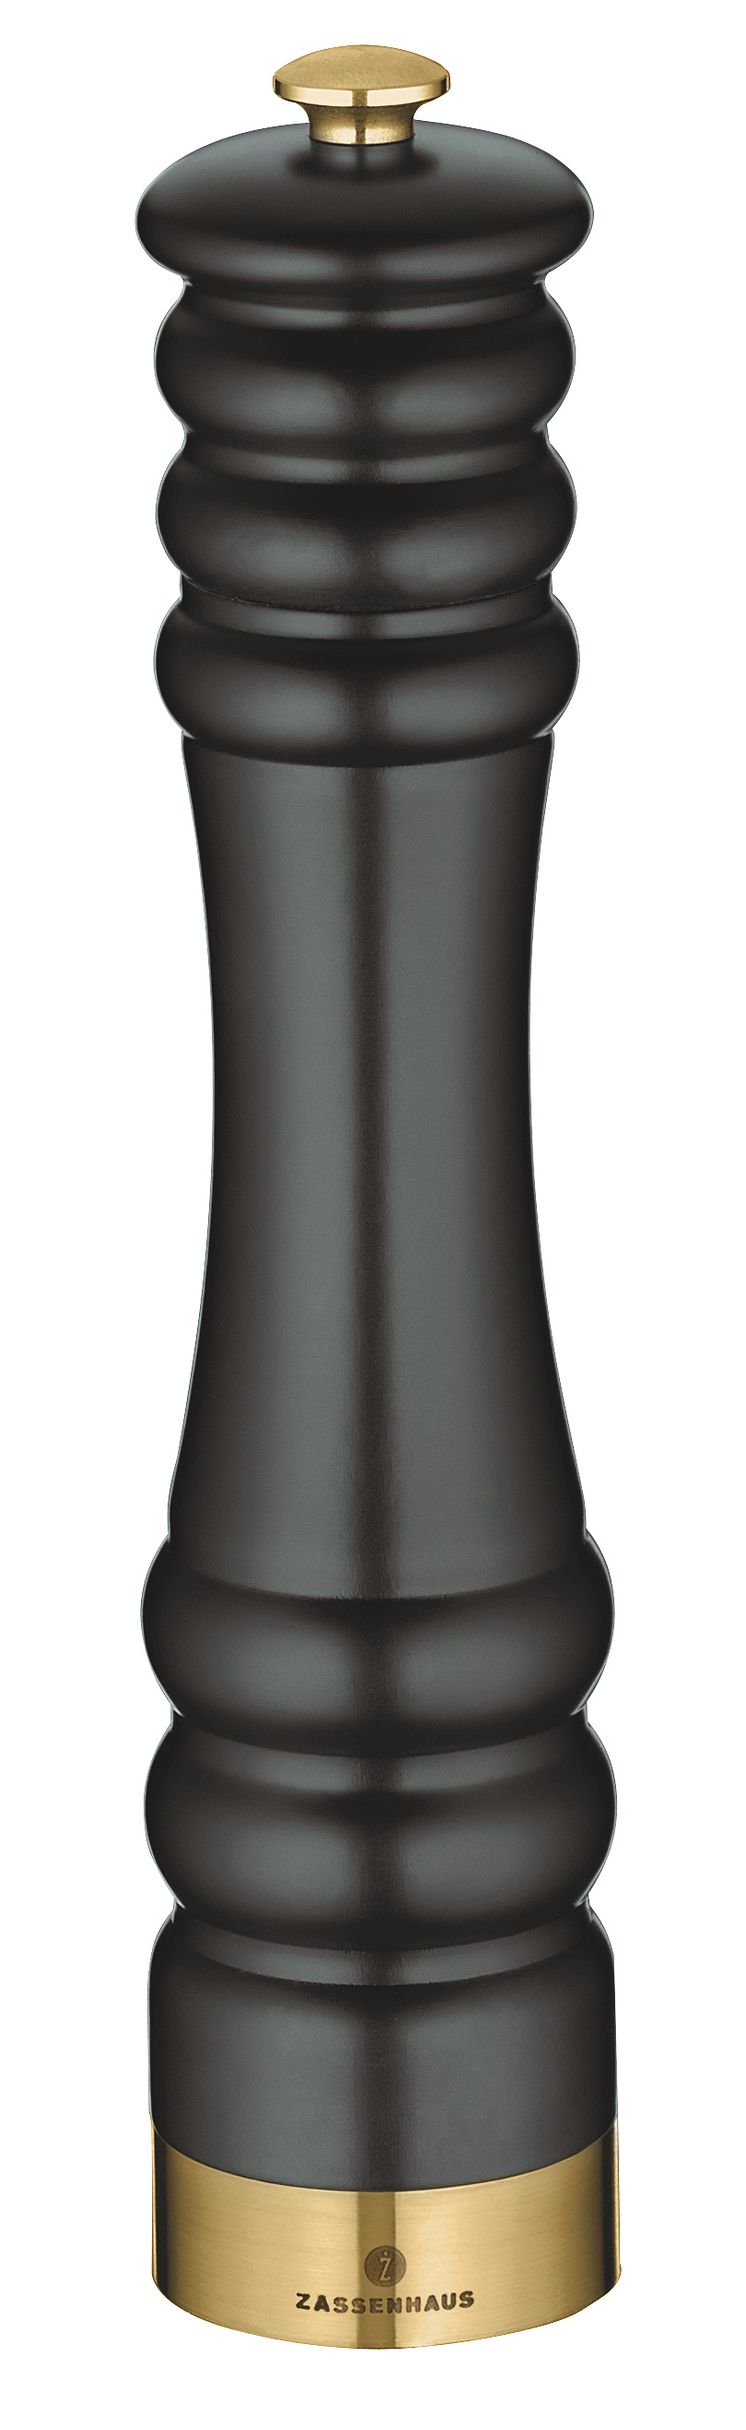 Zassenhaus - Pepparkvarn matt svart/guld 25 cm